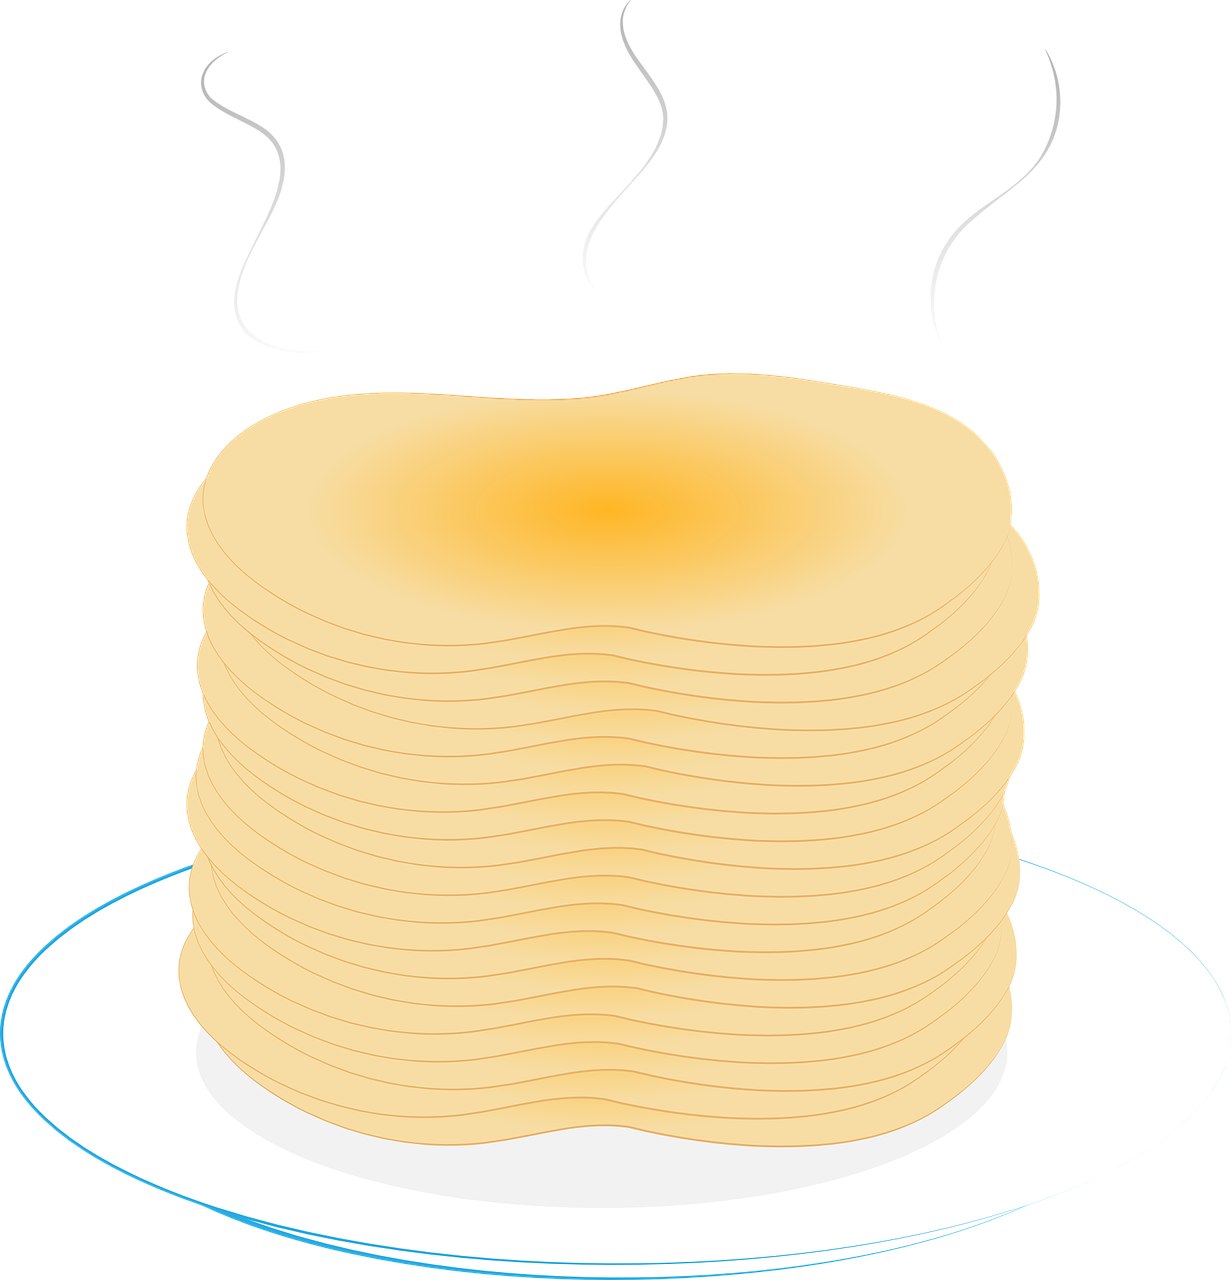 Scallion Pancakes